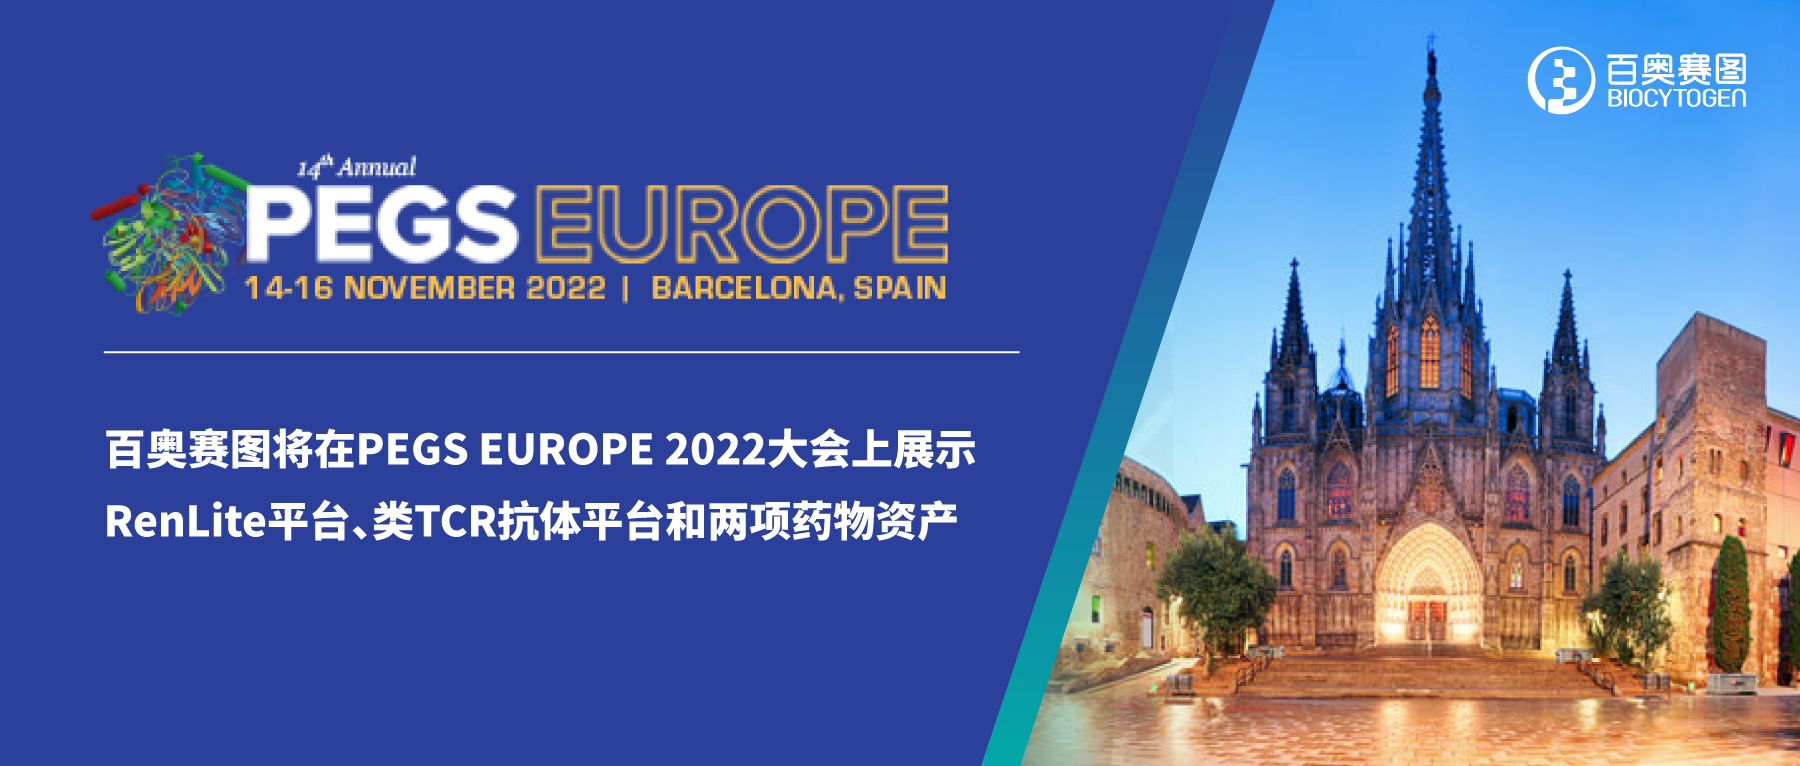 百奥赛图将在PEGS EUROPE 2022大会上展示RenLite平台、类TCR抗体平台和两项药物资产